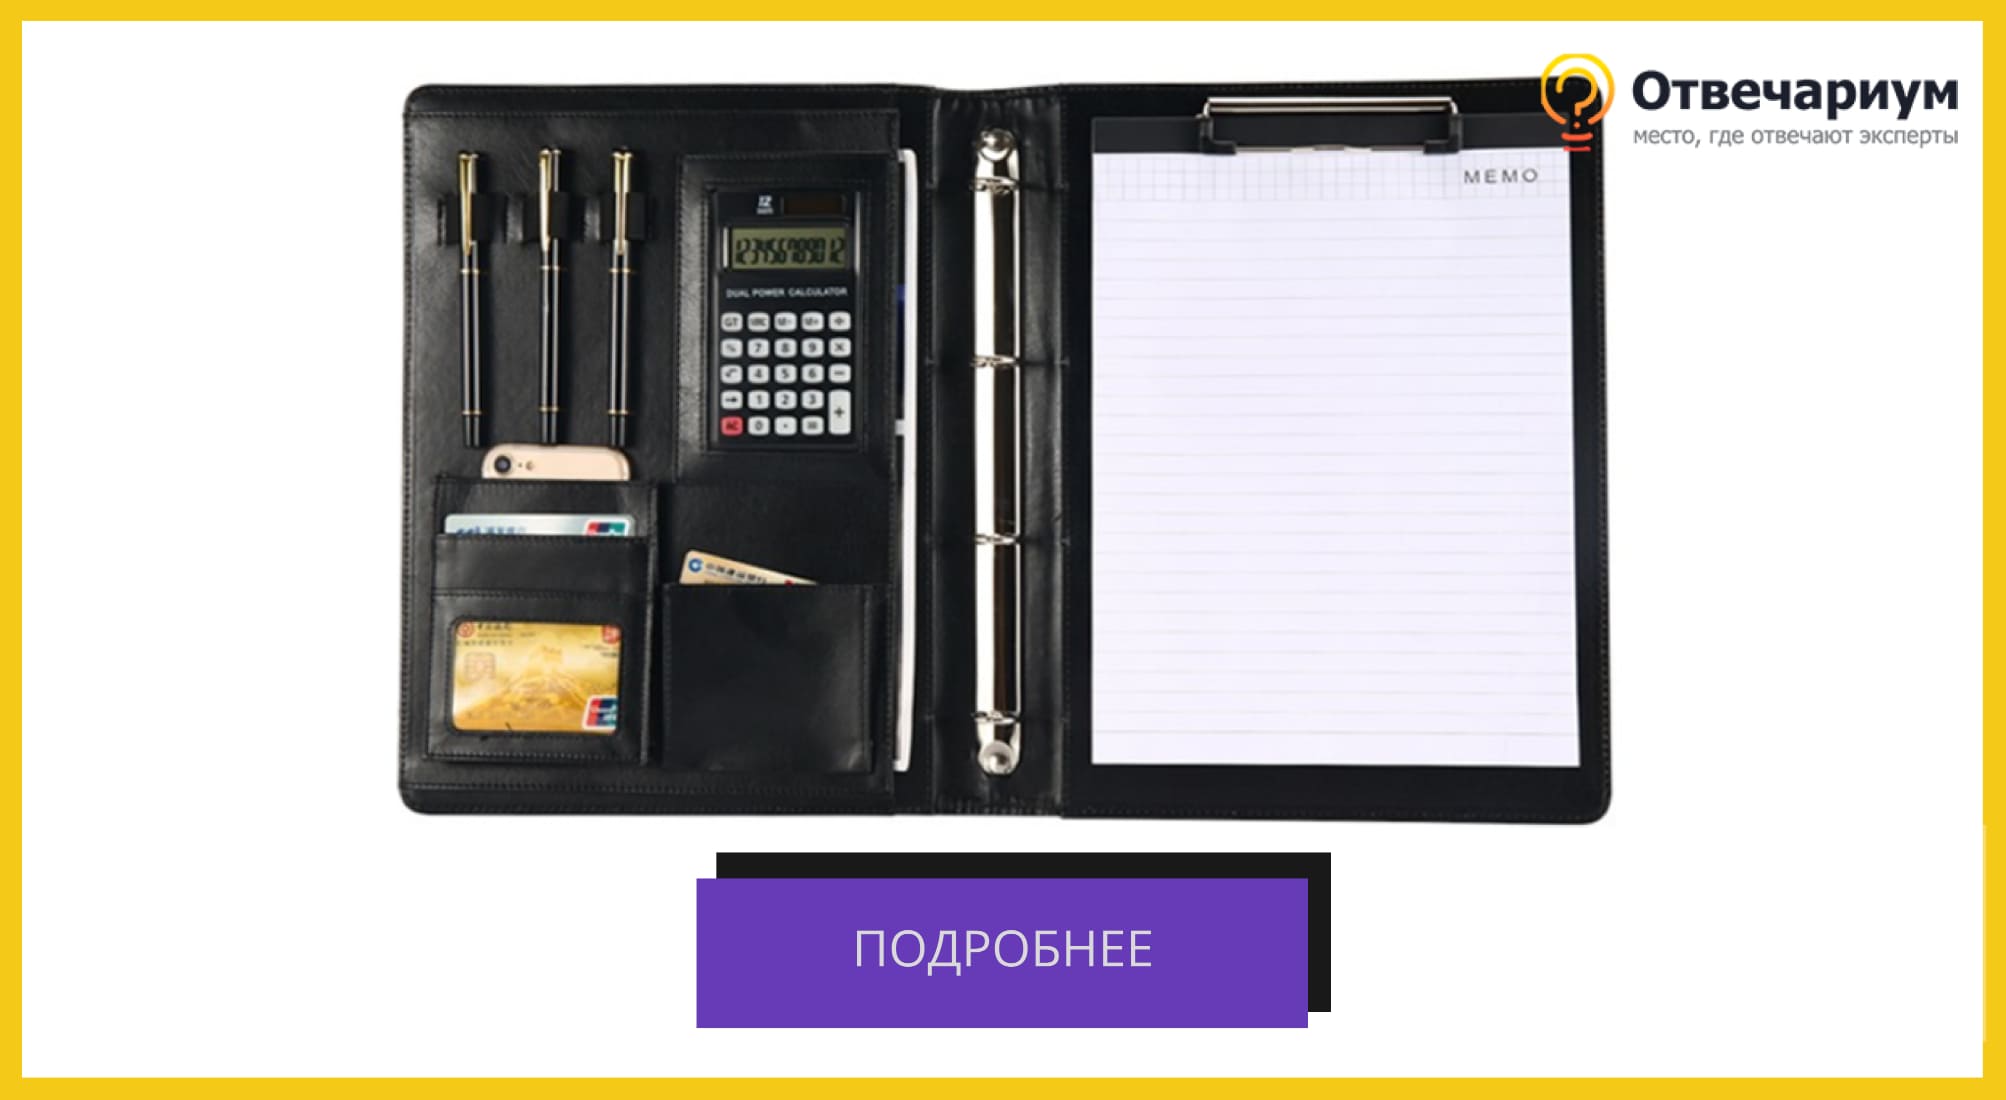 Кожаная папка для документов: листов а4, калькулятора, трех ручек, телефона и кредитных карт.